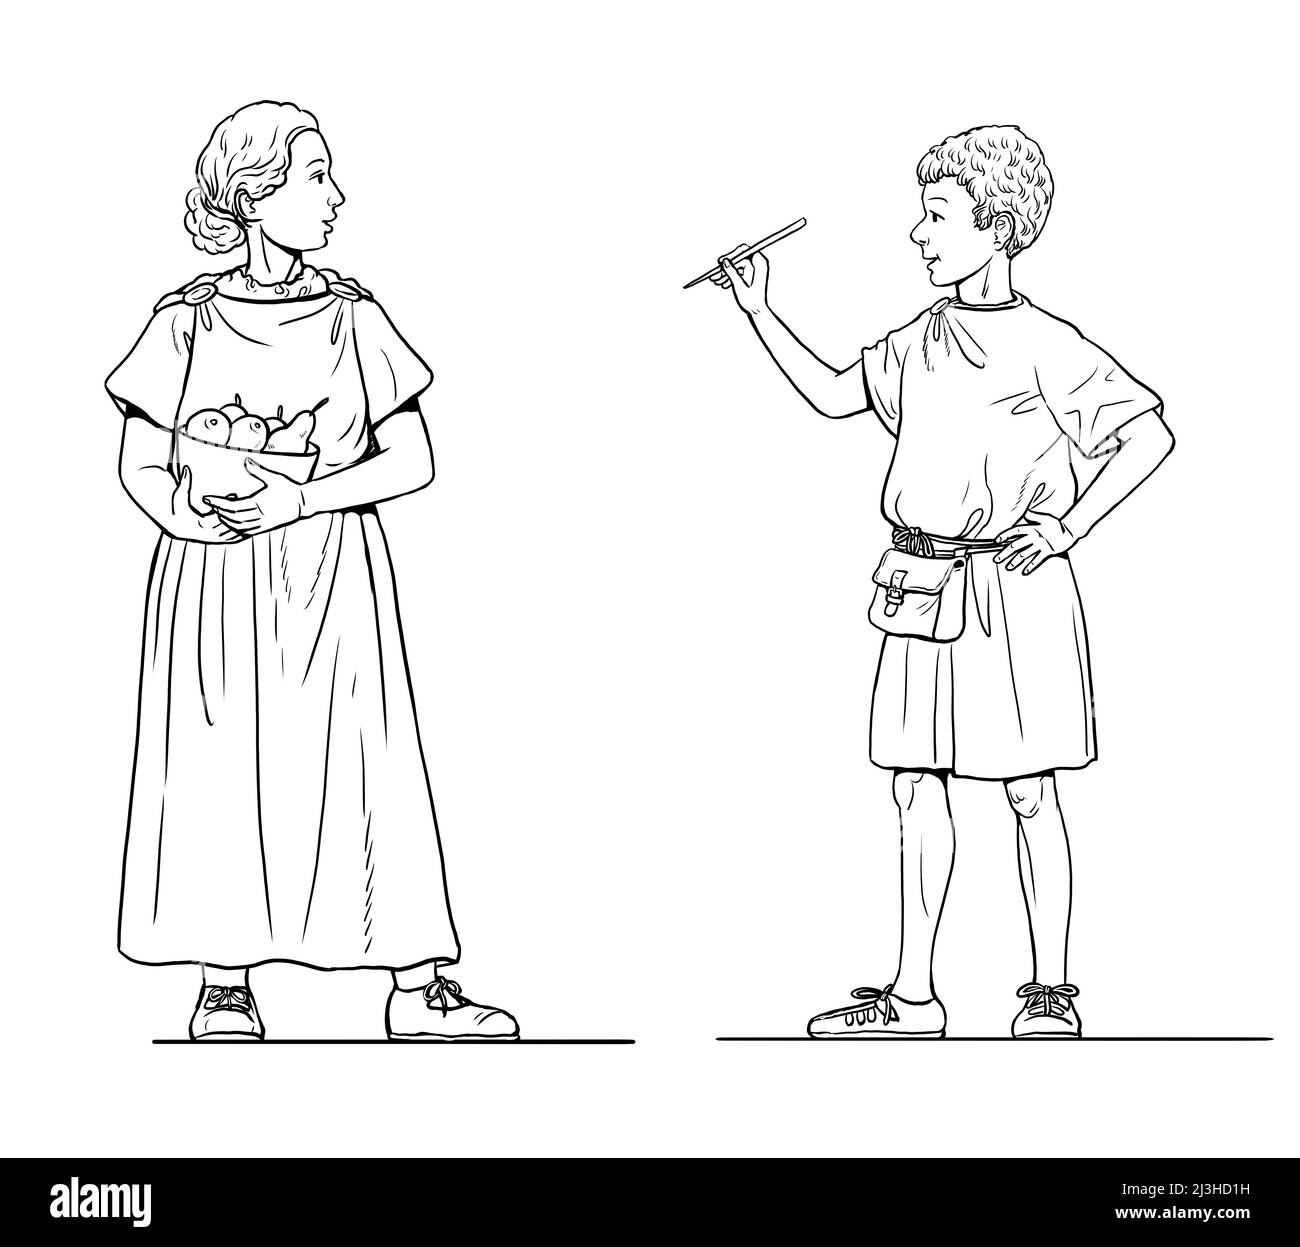 Illustration des enfants romains. Enfants de la Rome antique. Banque D'Images